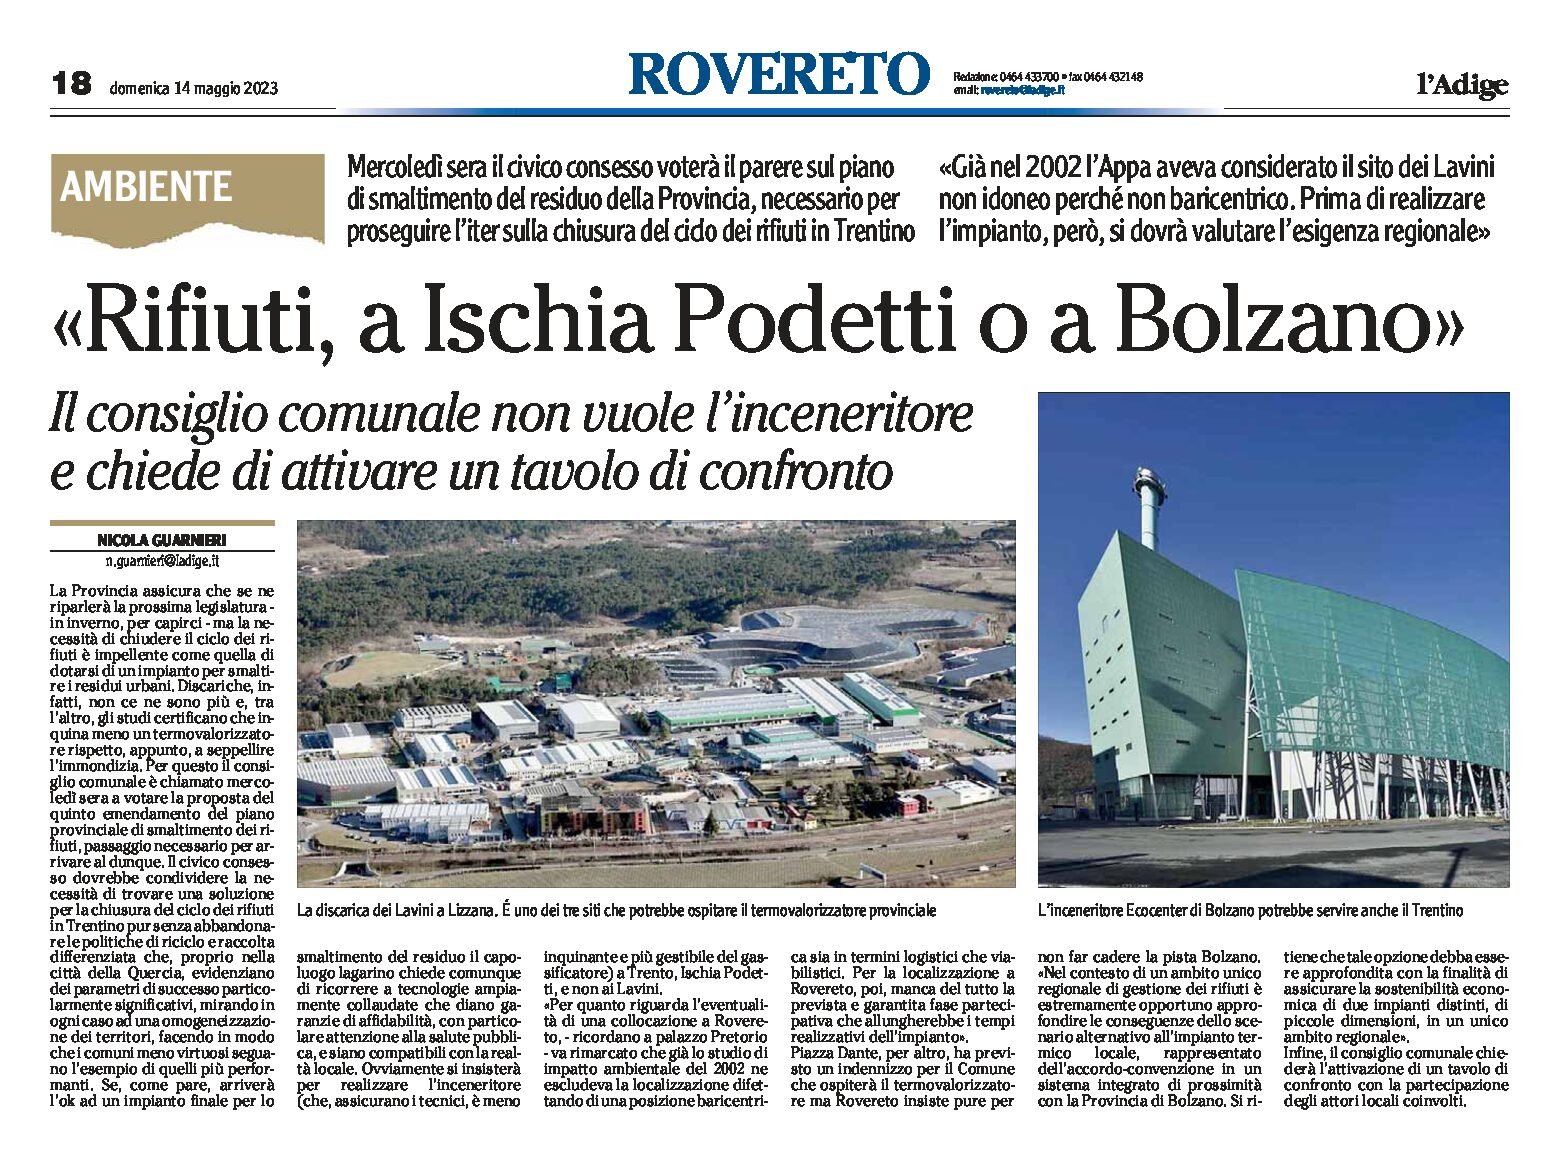 Rovereto, rifiuti: a Ischia Podetti o a Bolzano